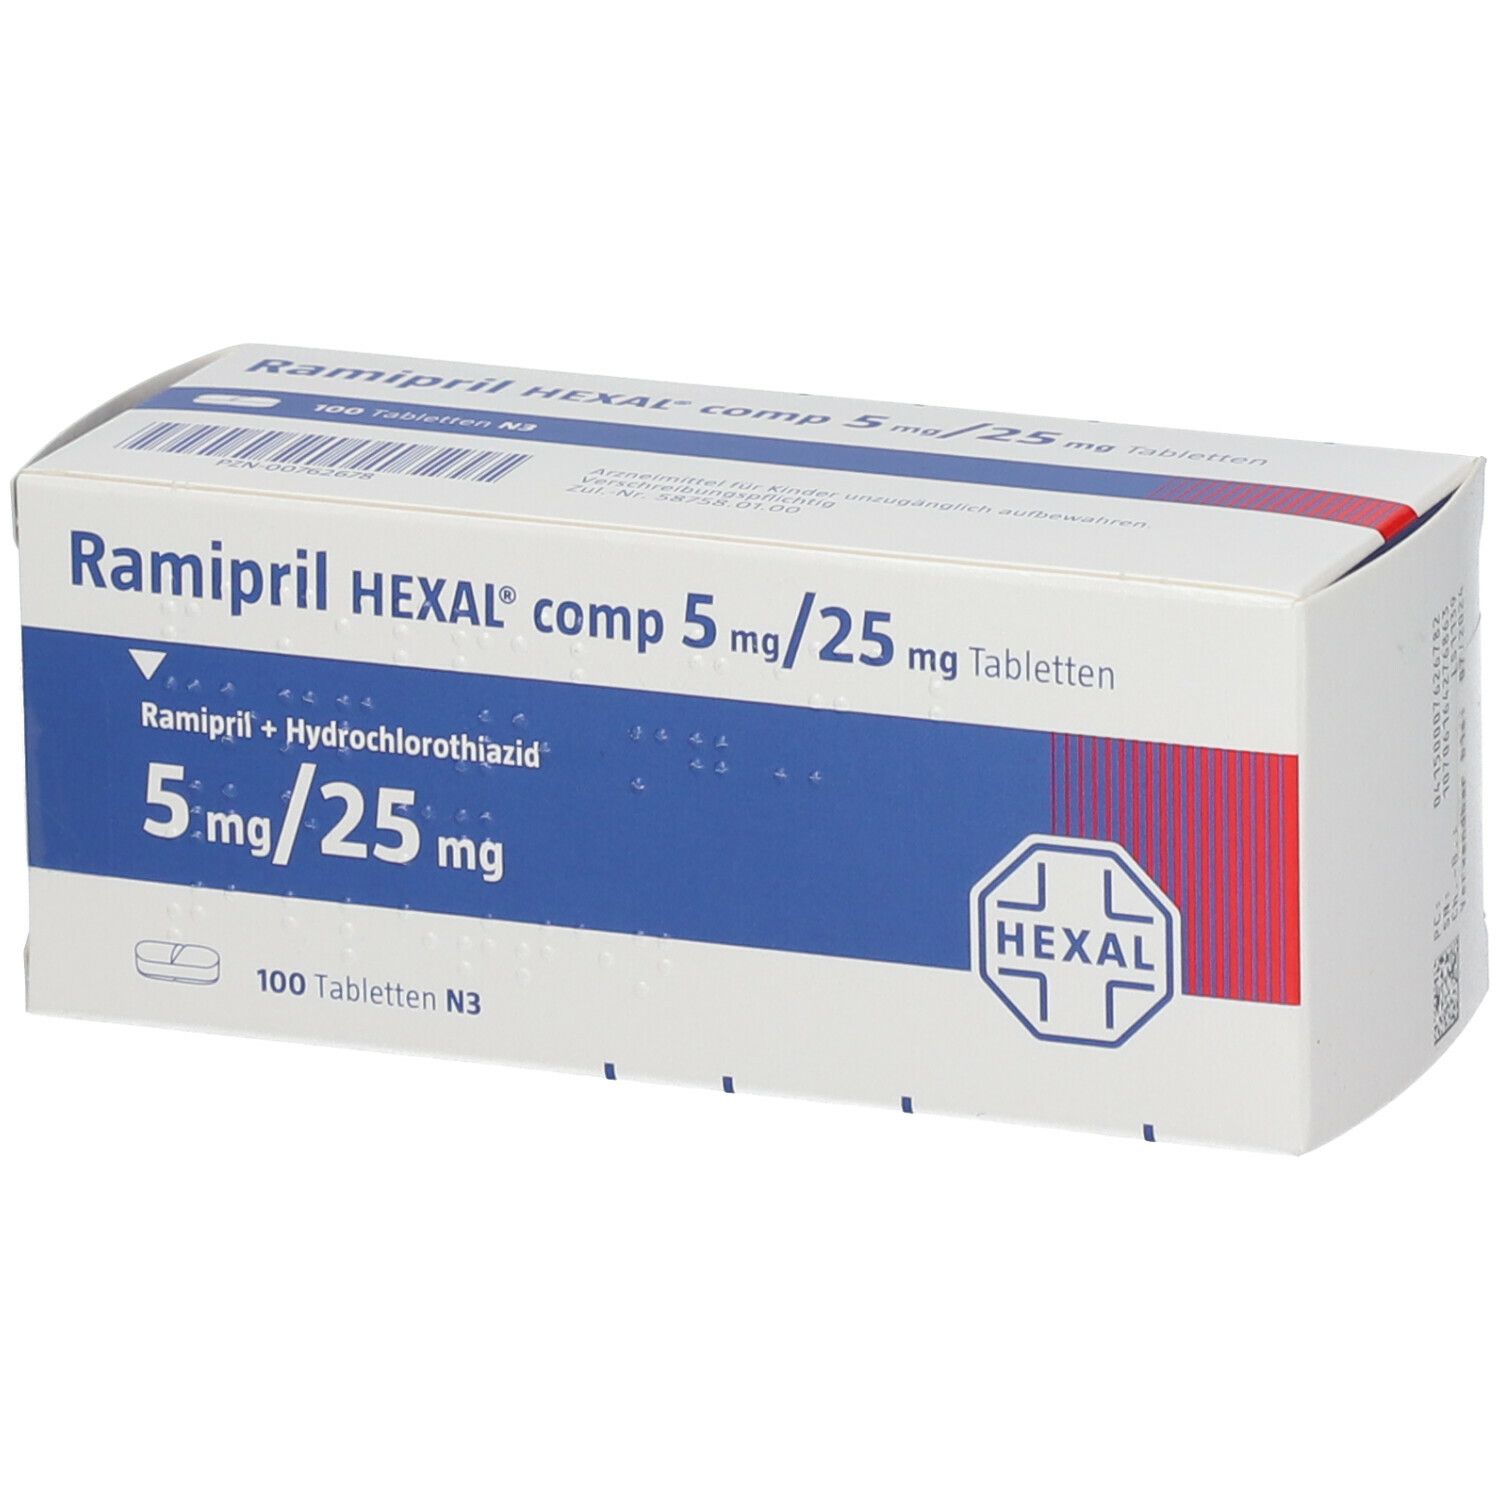 Ramipril HEXAL® comp 5 mg/25 mg